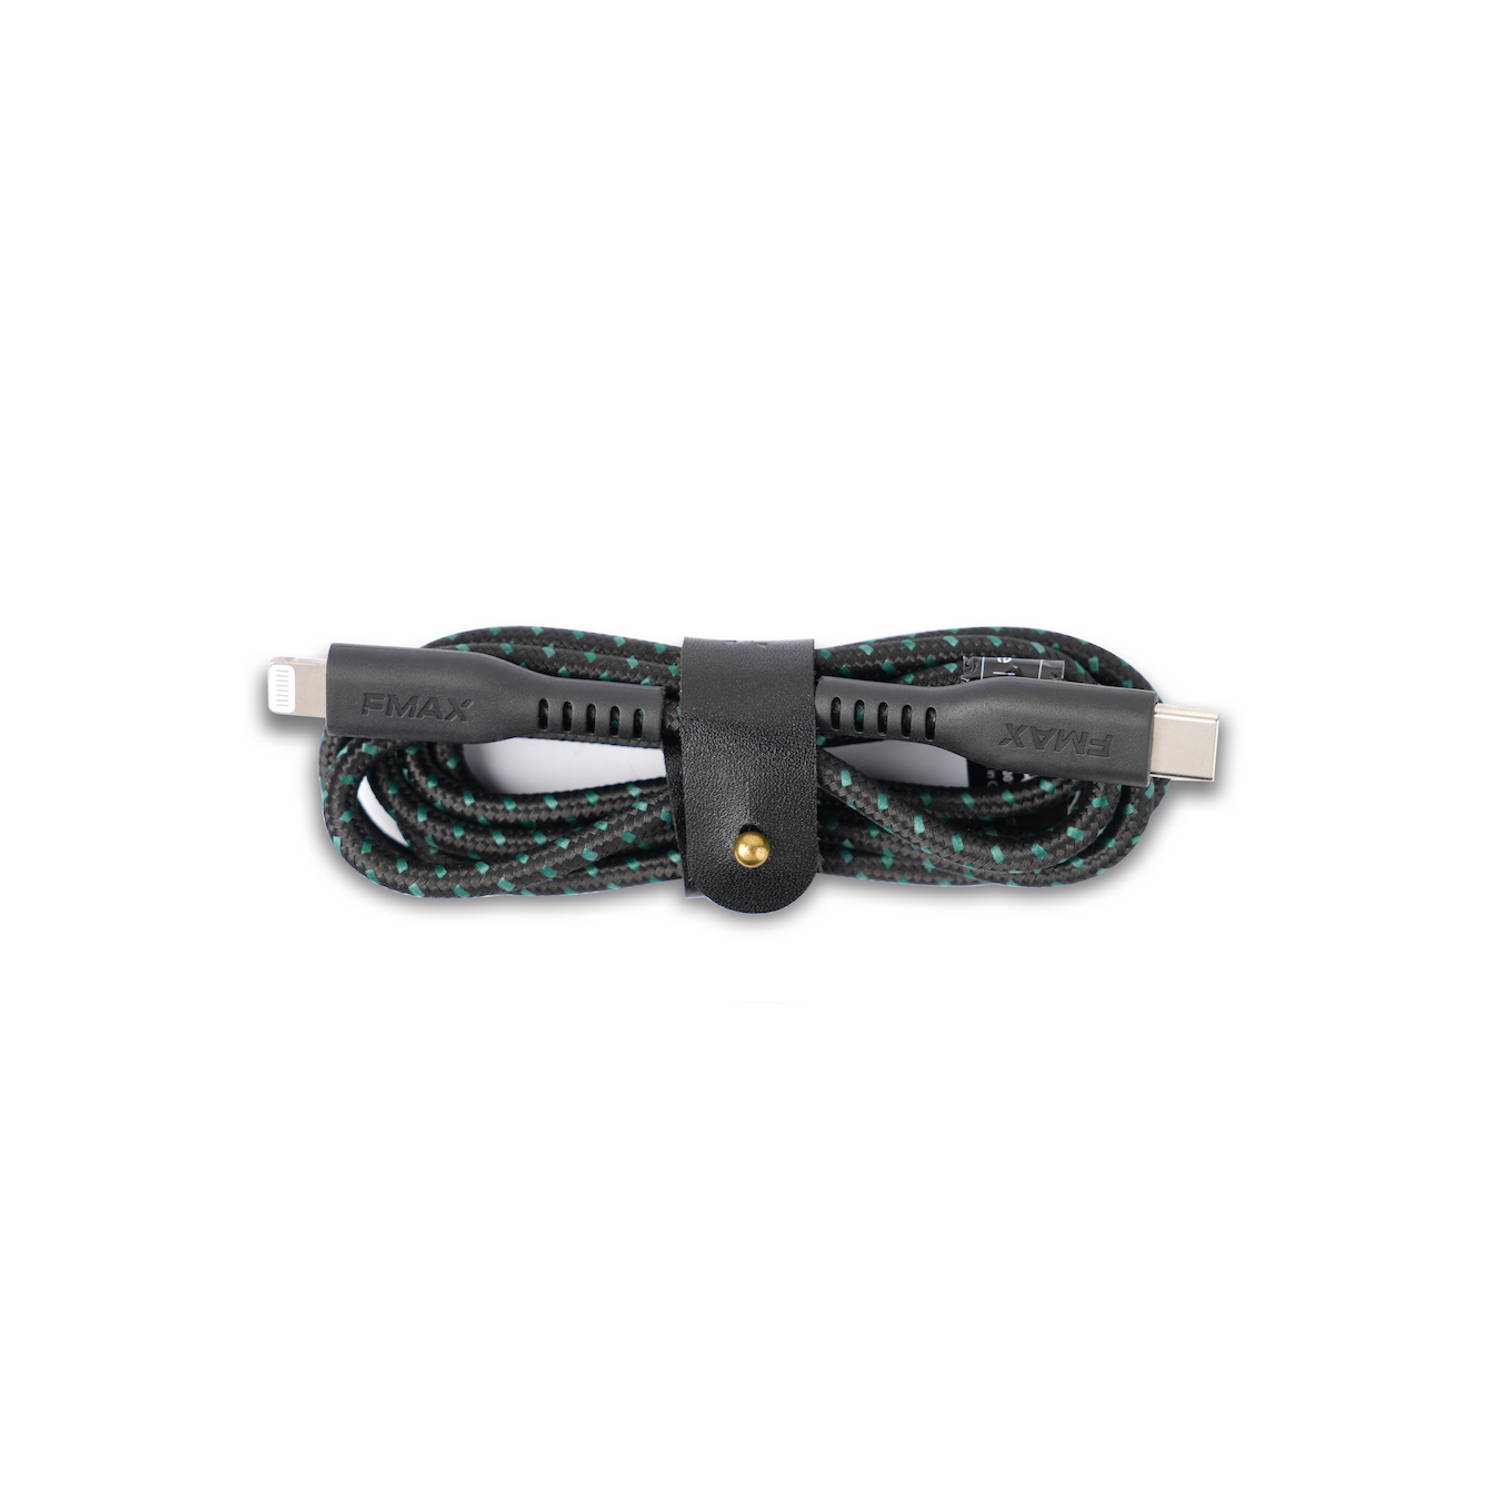 FMAX - Oplaadkabel - Type-C Lightning USB kabel - 1.2 meter - MFI gecertificeerd - 2 stuks